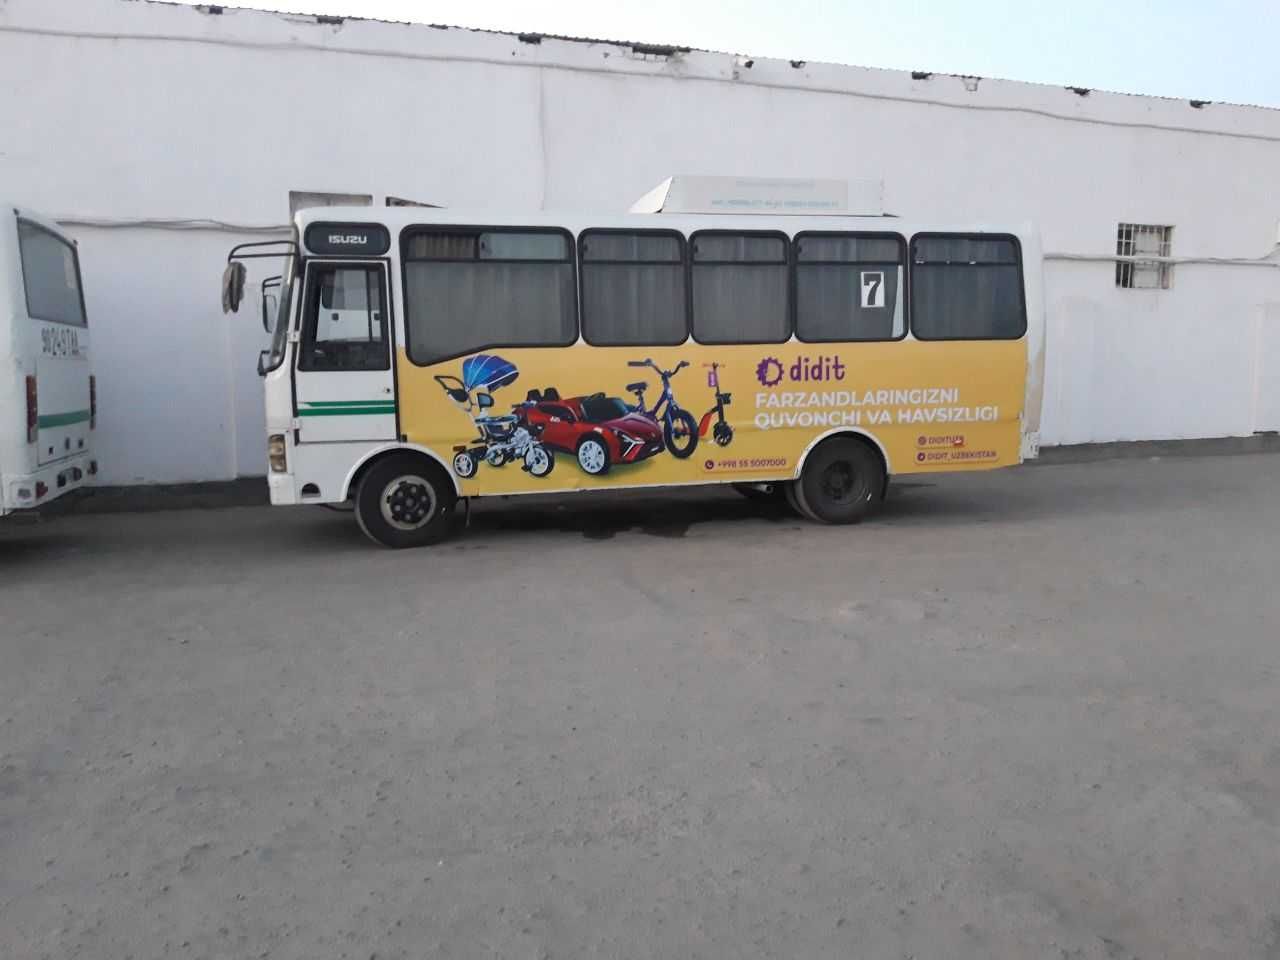 Samarqandda avtobuslarning ichida va tashqarisida reklama xizmatlari